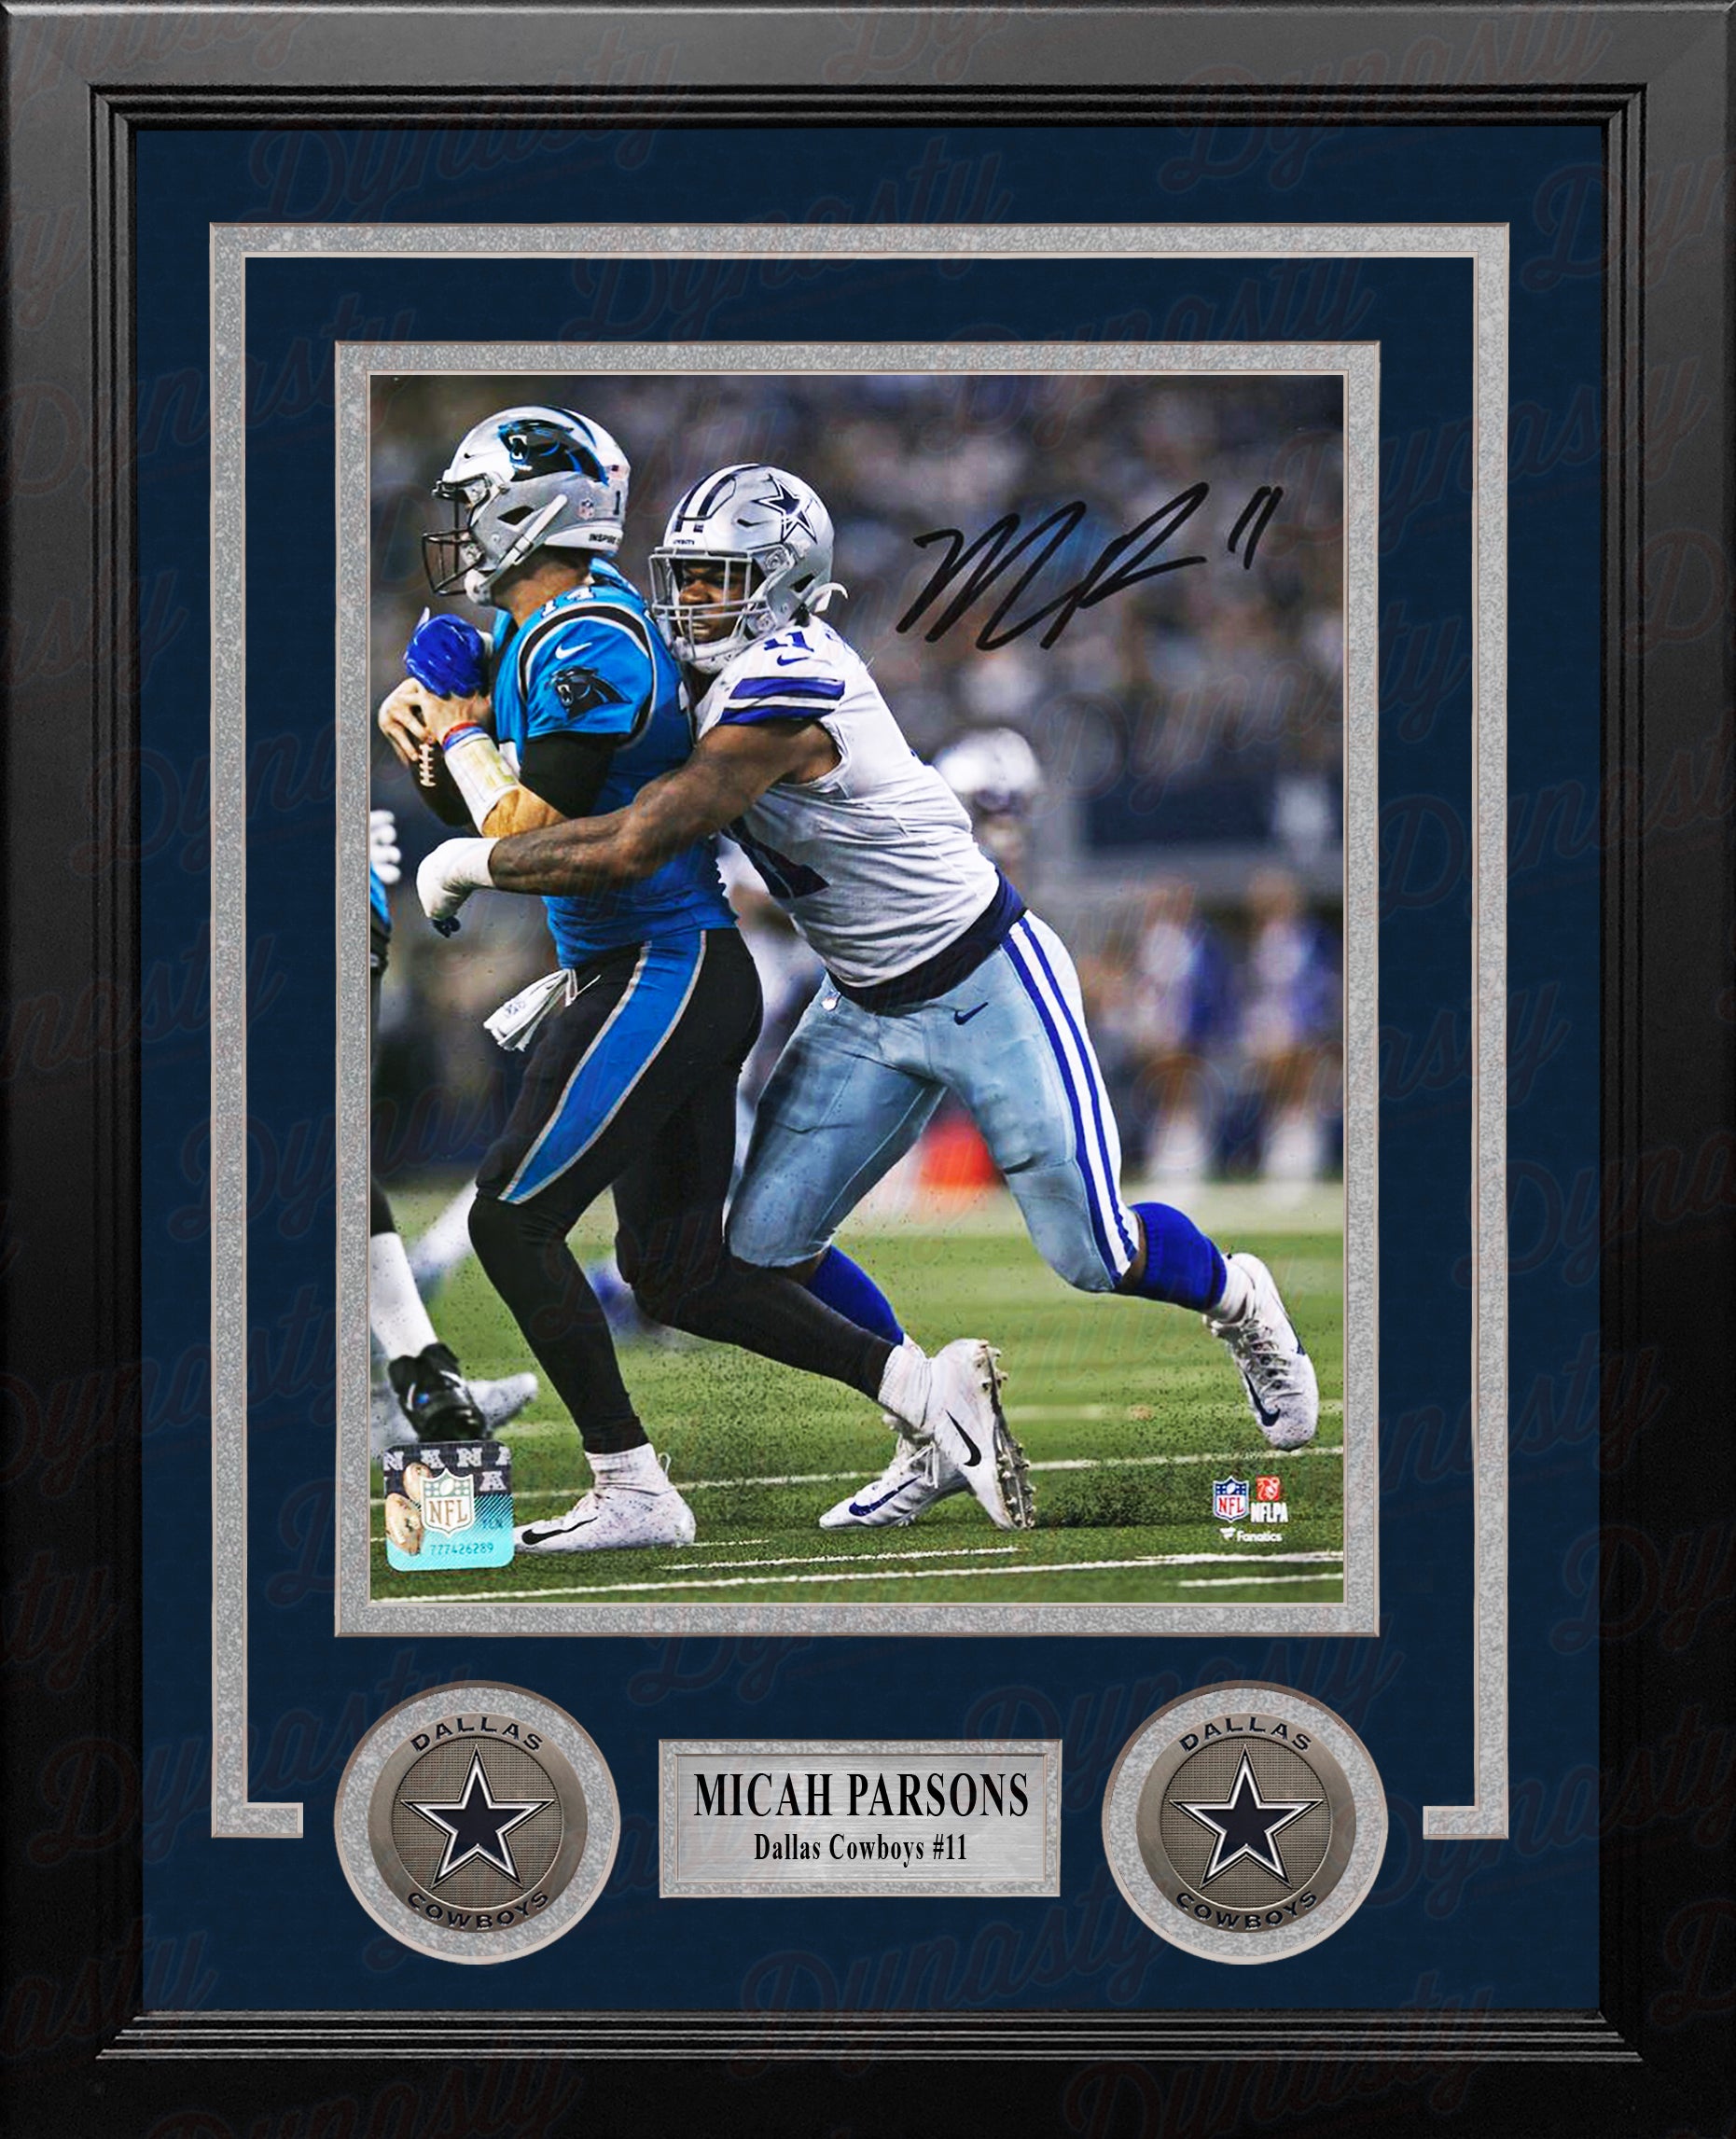 Micah Parsons Dallas Cowboys Fanatics Authentic Autographed 8